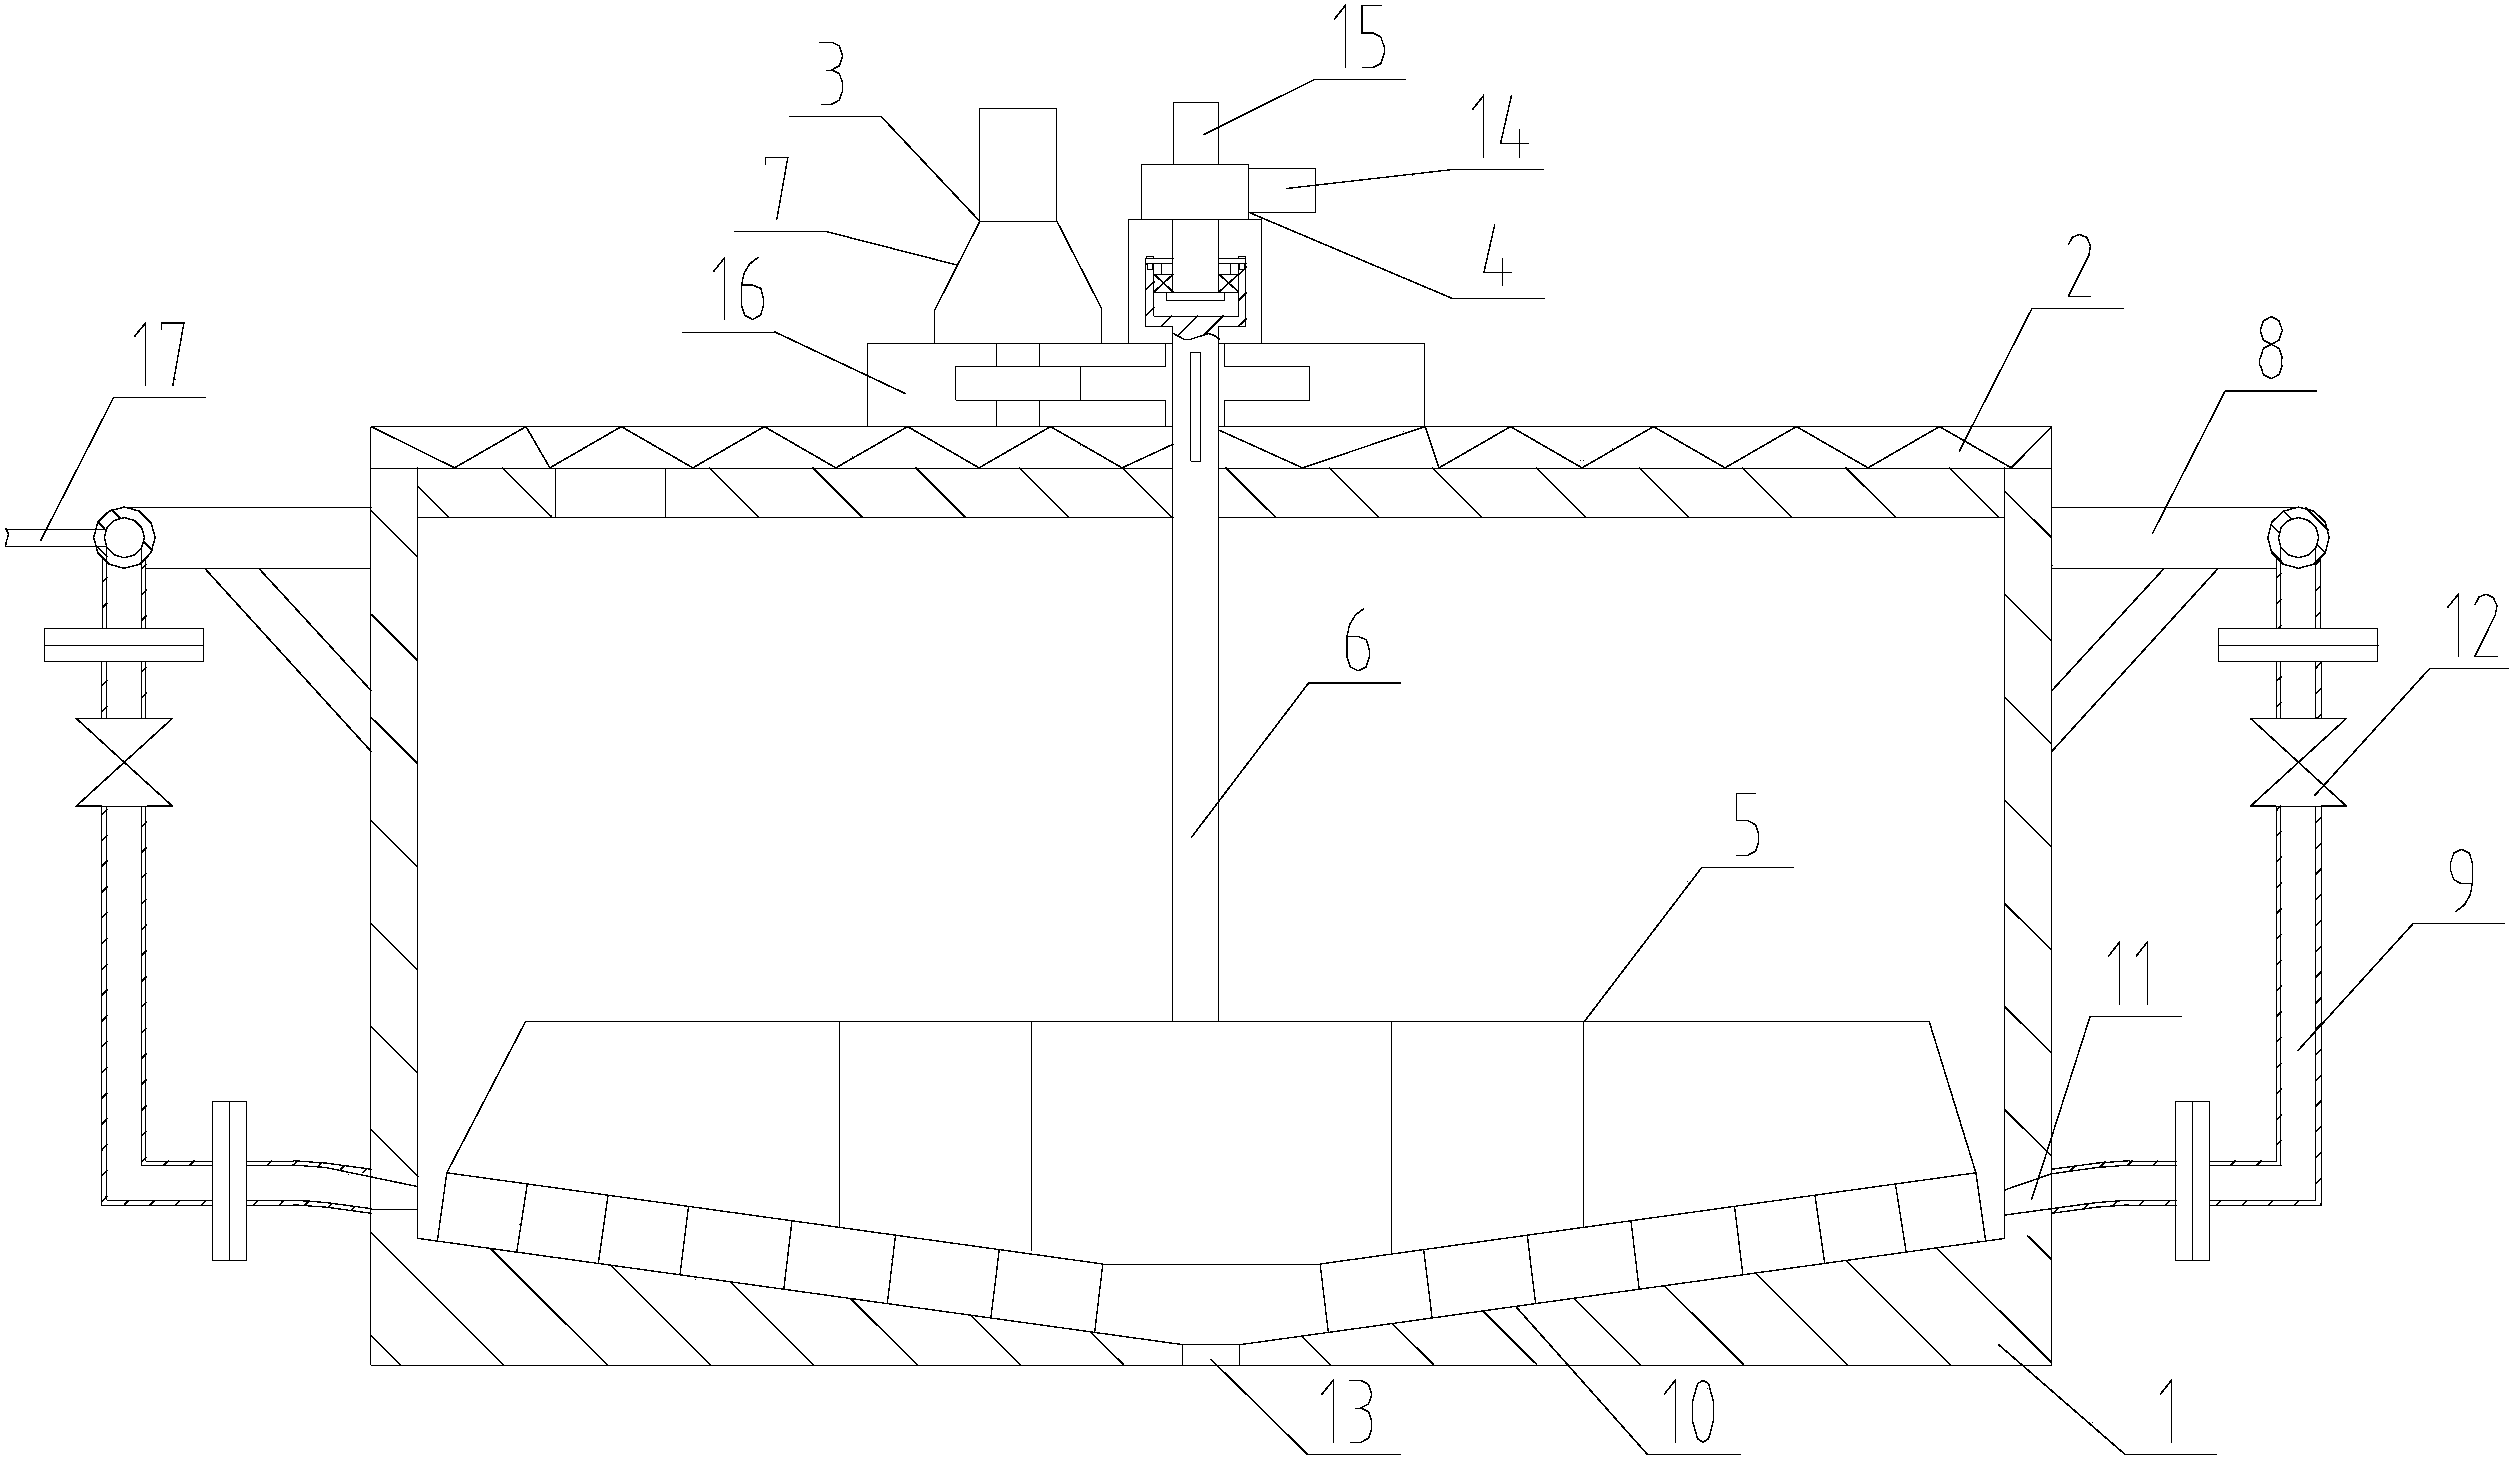 氧化铝沉降槽的结构图图片